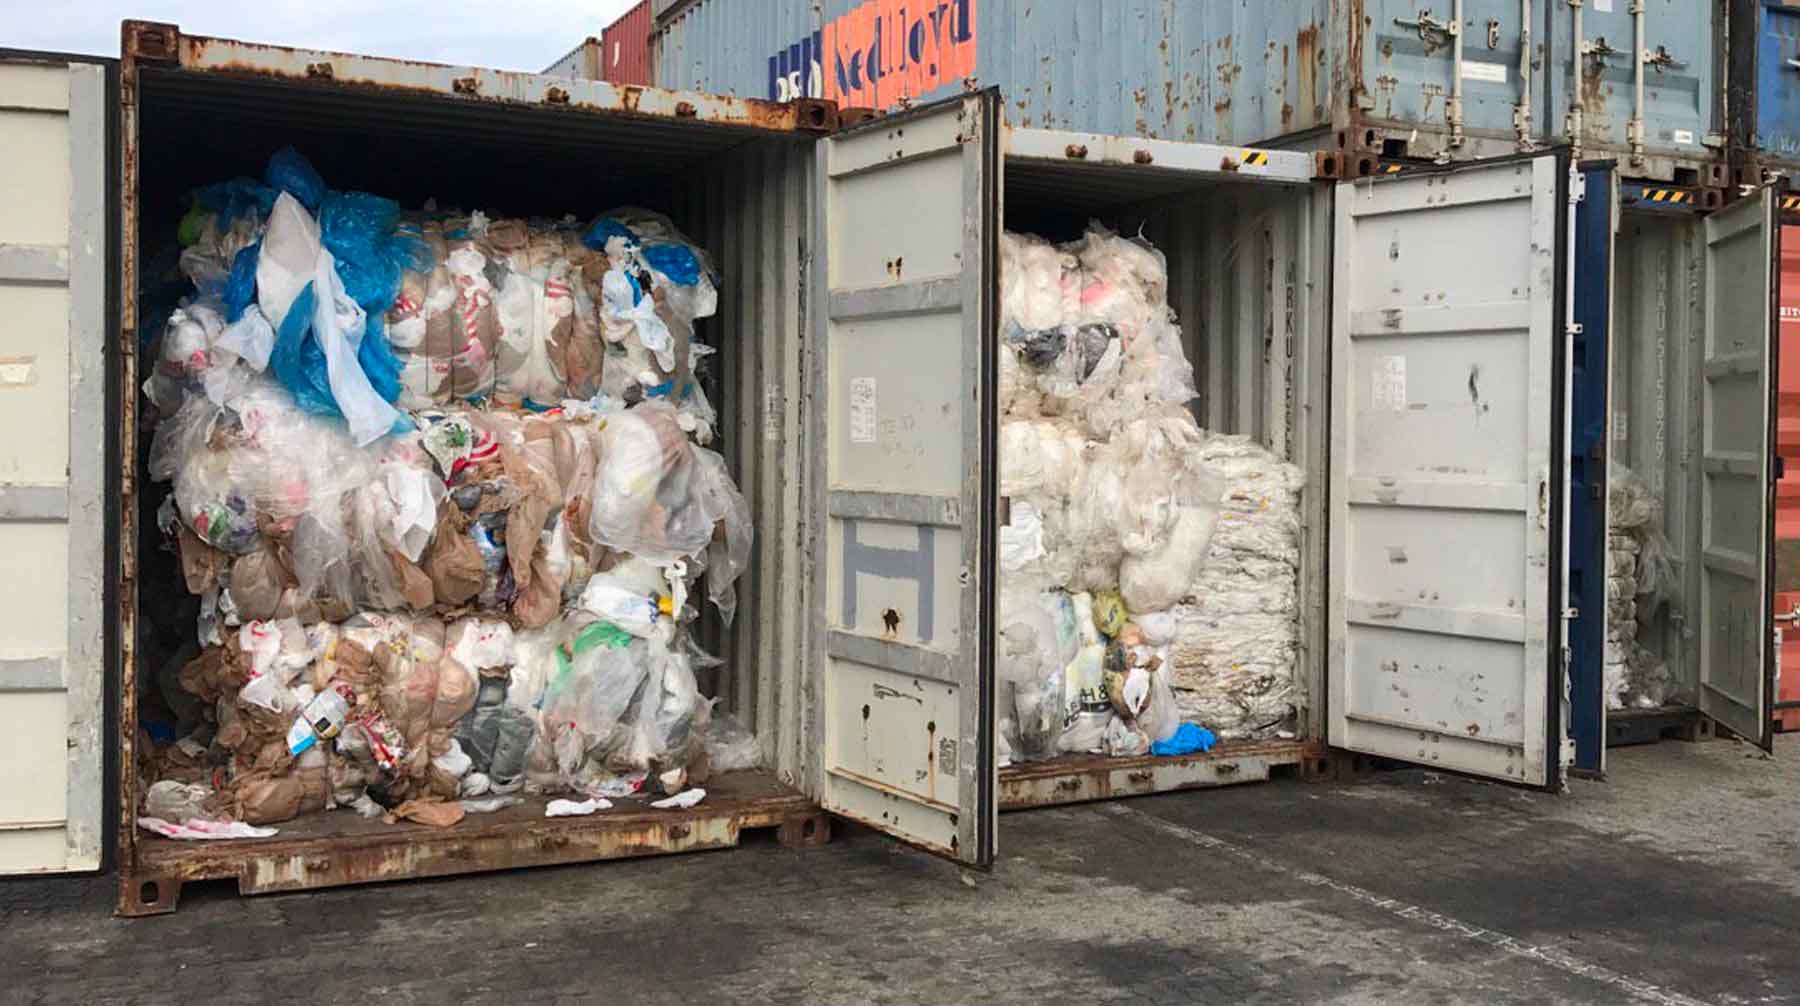 В стране нет отлаженной системы сбора полимерных отходов — поэтому существует дефицита вторсырья, пояснили эксперты Фото: © GLOBAL LOOK press / Maopengfei